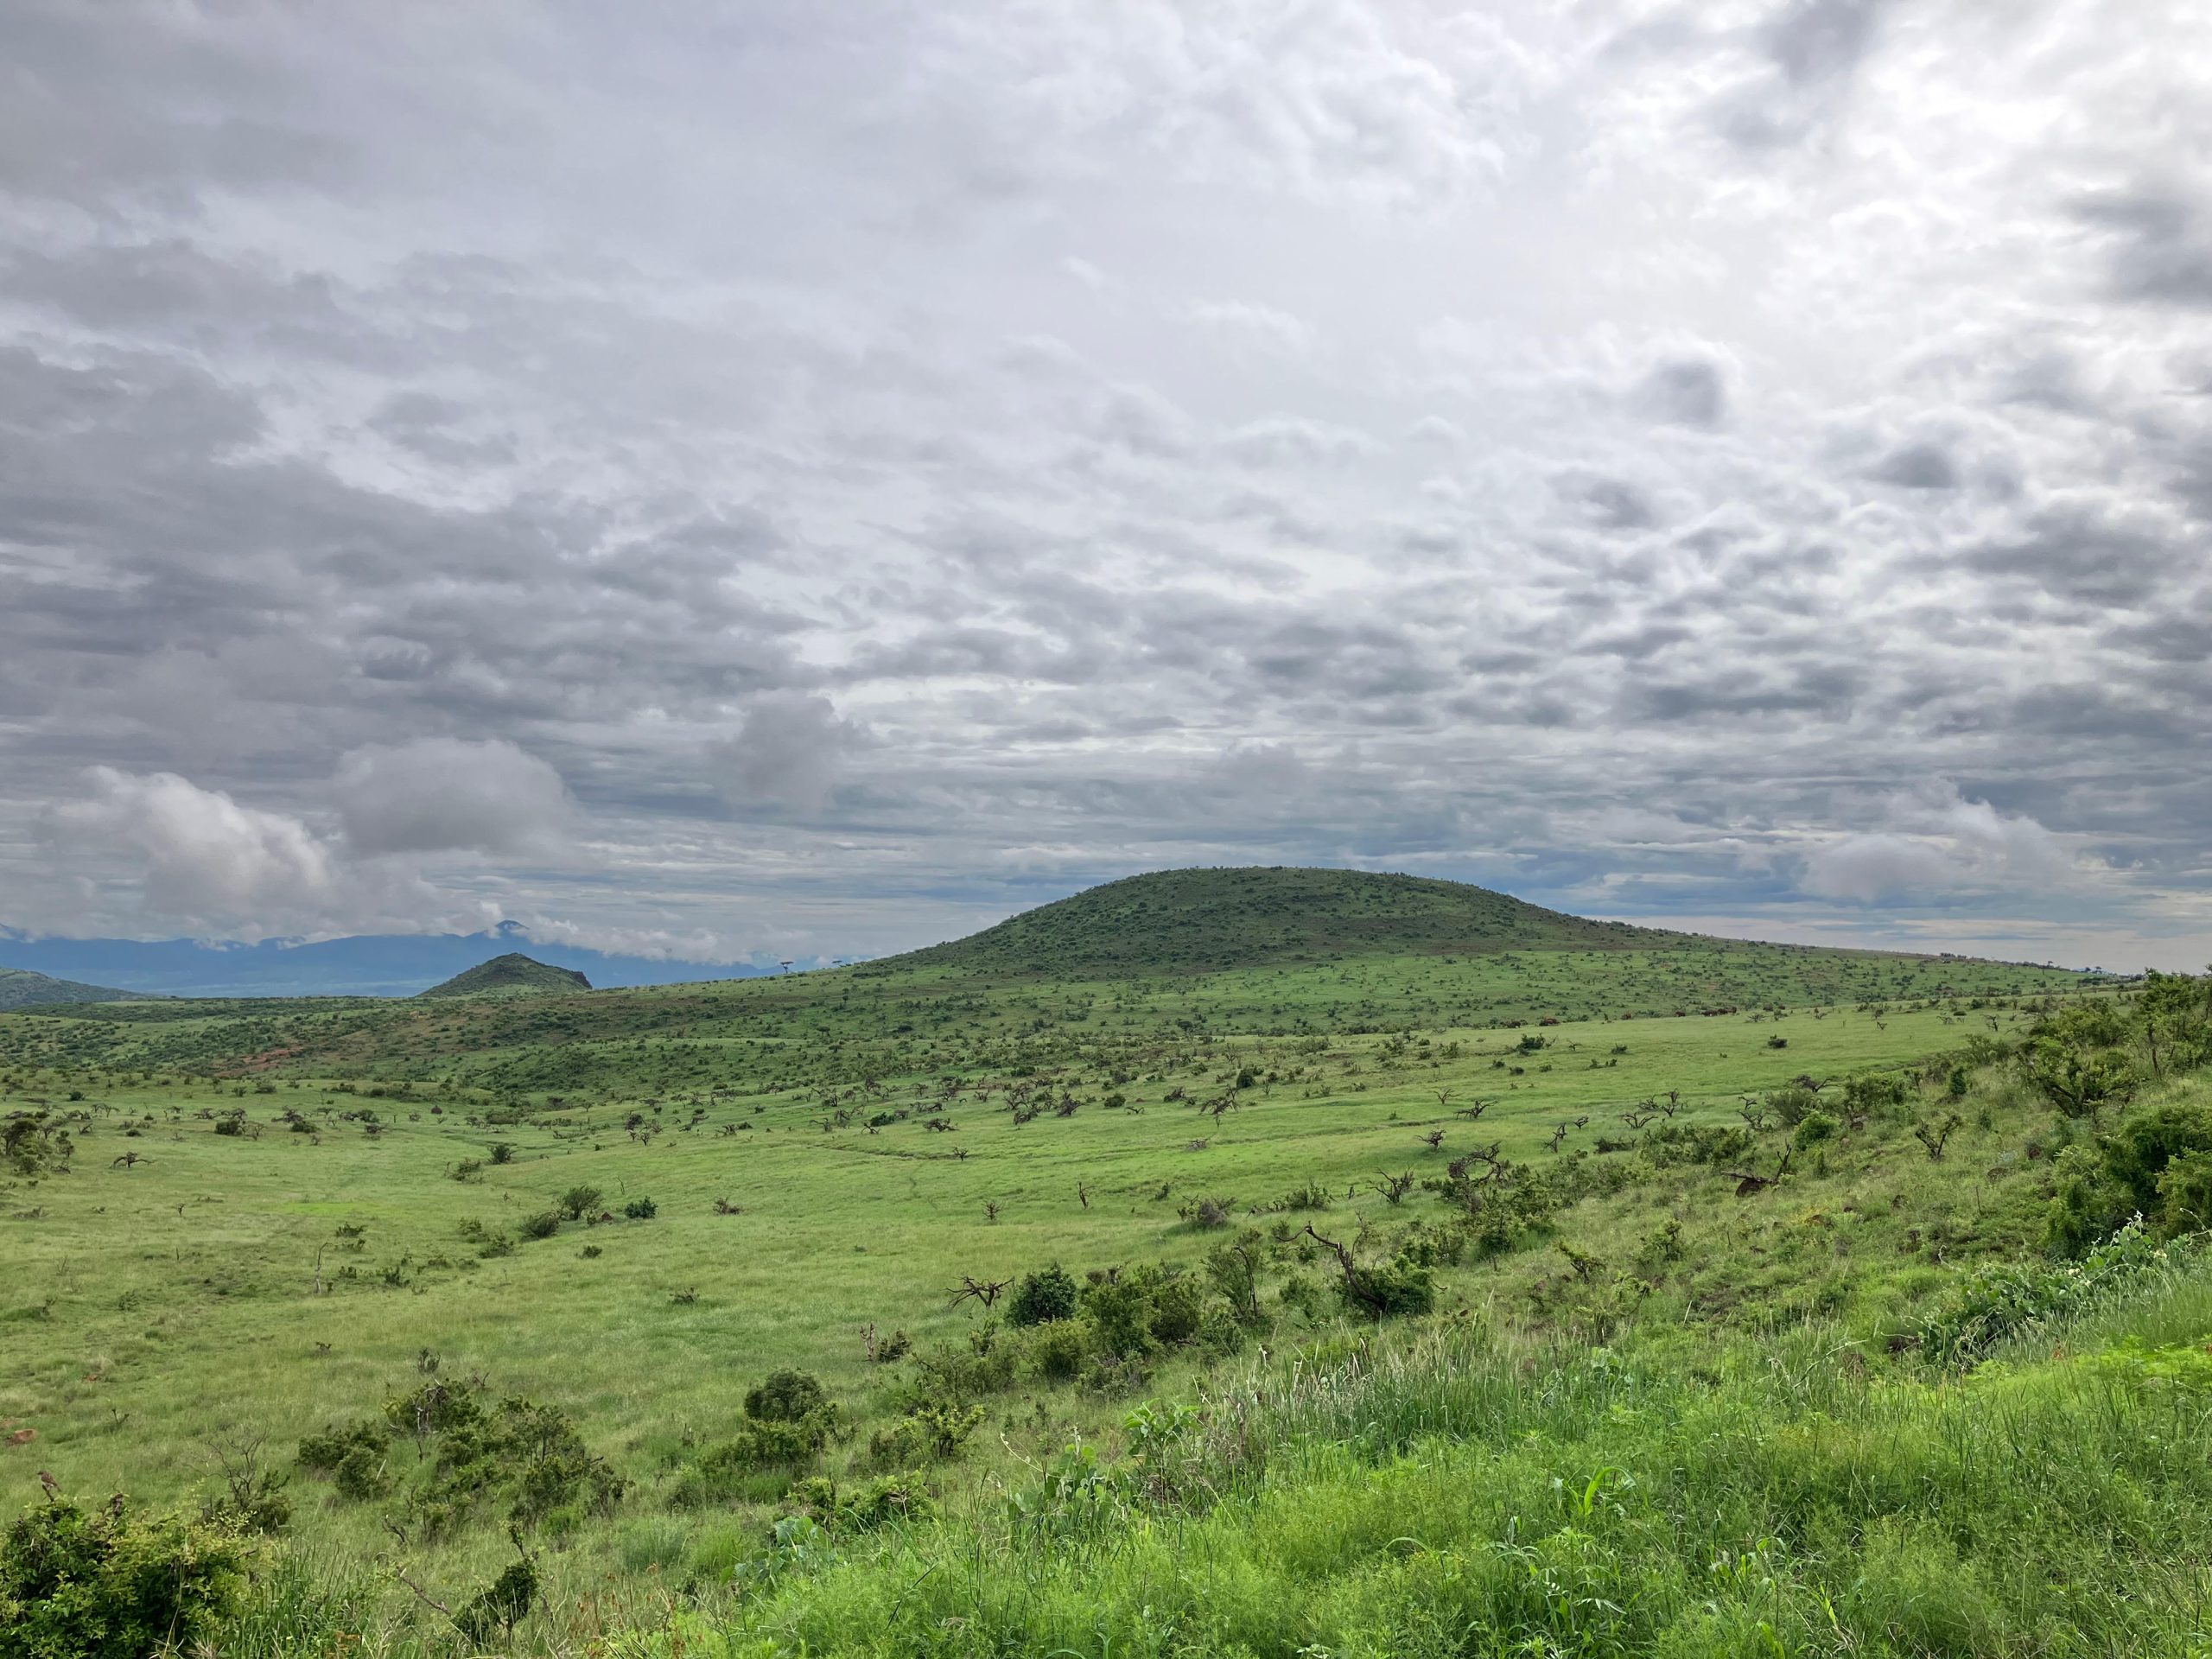 Grassland-Kenya-scaled.jpg